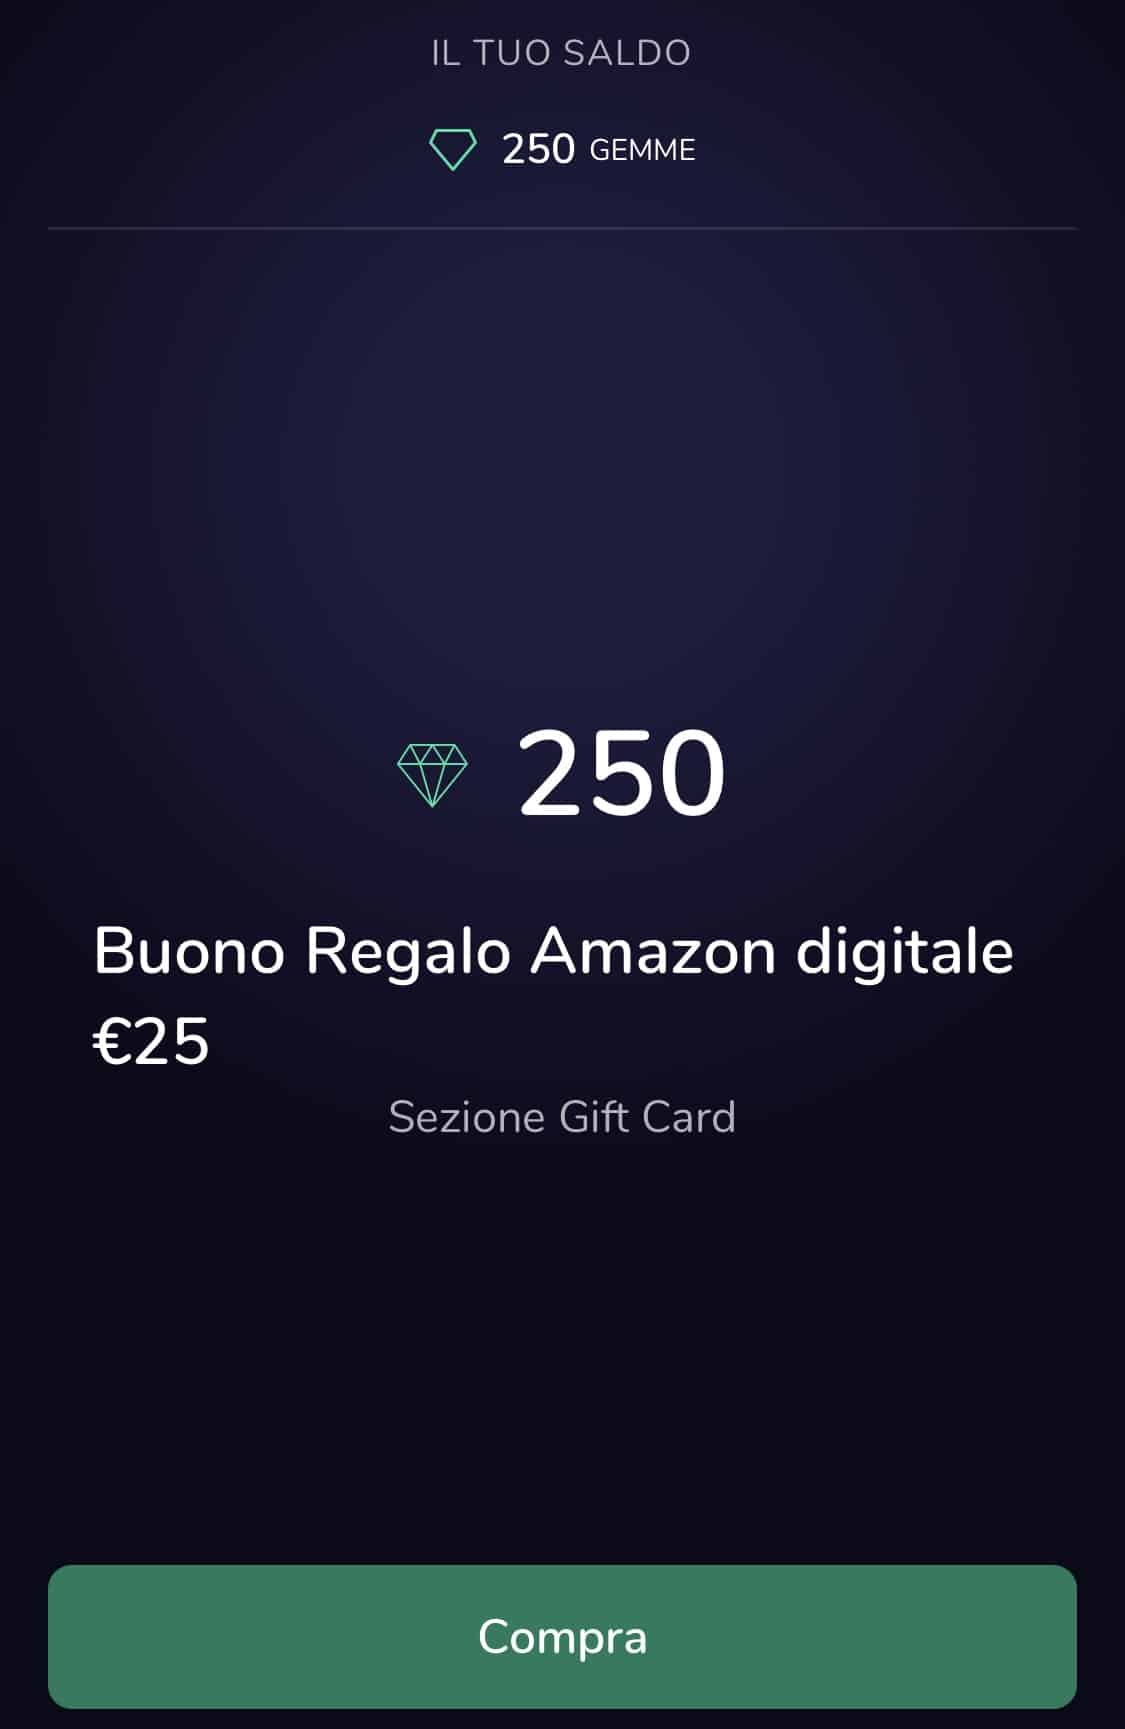 Acquistiamo una gift card del valore di 25€ con Flowe e il suo bonus